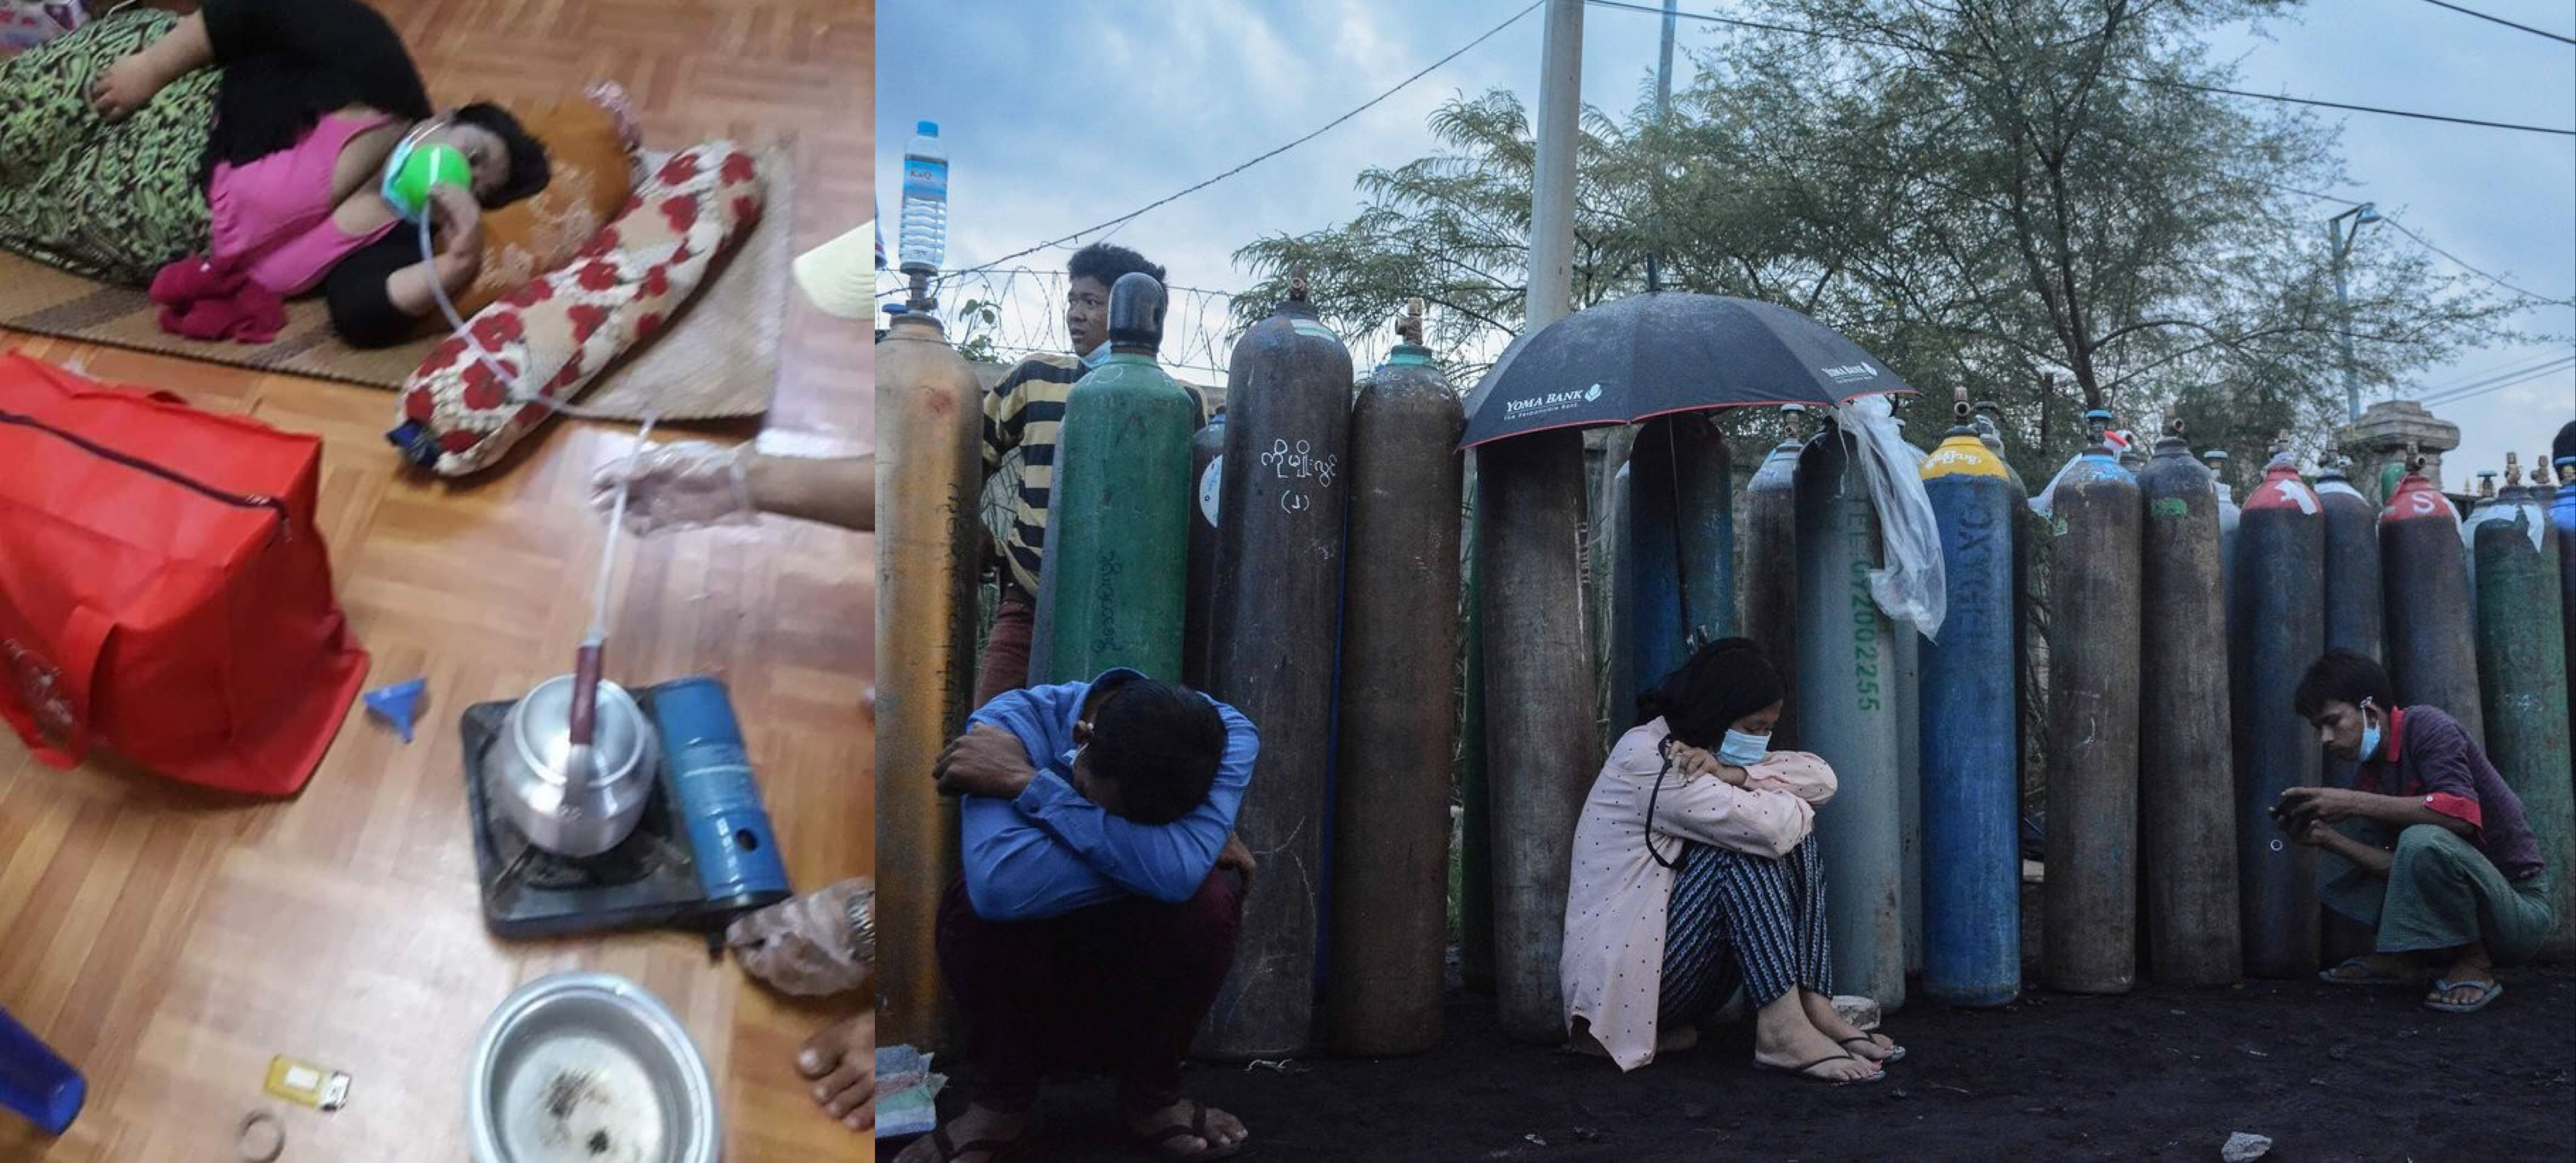 코로나가 창궐하고 있는 미얀마는 산소통을 구하기 위한 전쟁이 벌어지고 있다. 한 환자가 물을 끓여 산소를 공급받고 있다. [사진 : 트위터 미얀마 나우]